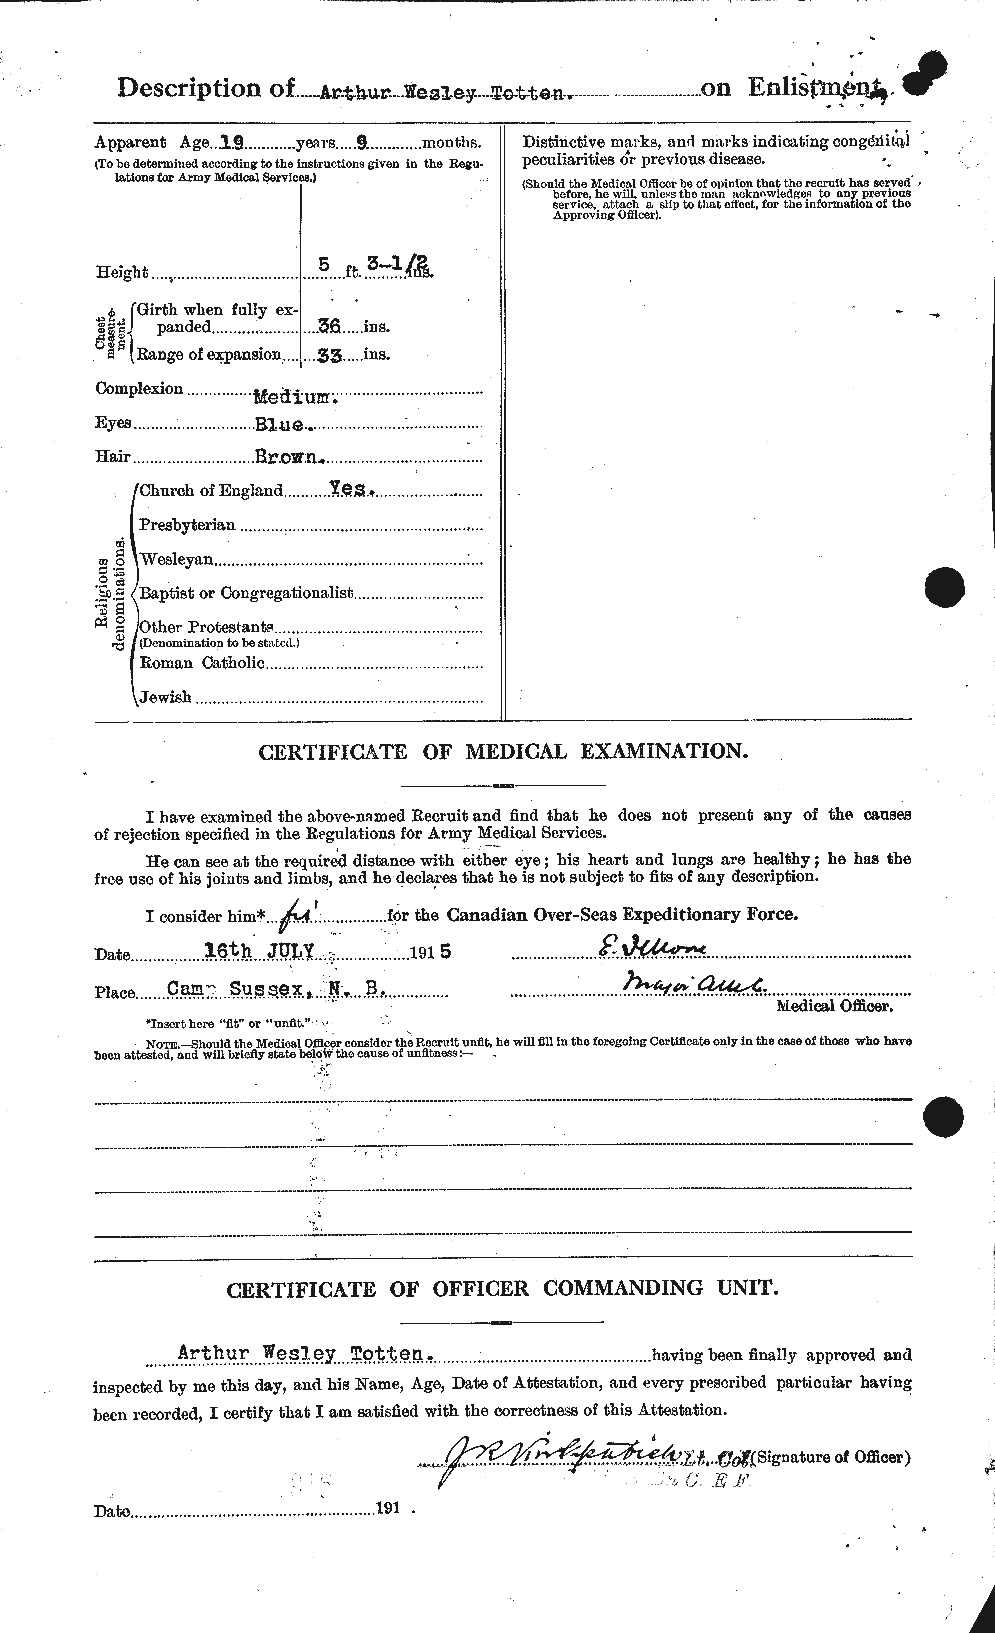 Dossiers du Personnel de la Première Guerre mondiale - CEC 650062b